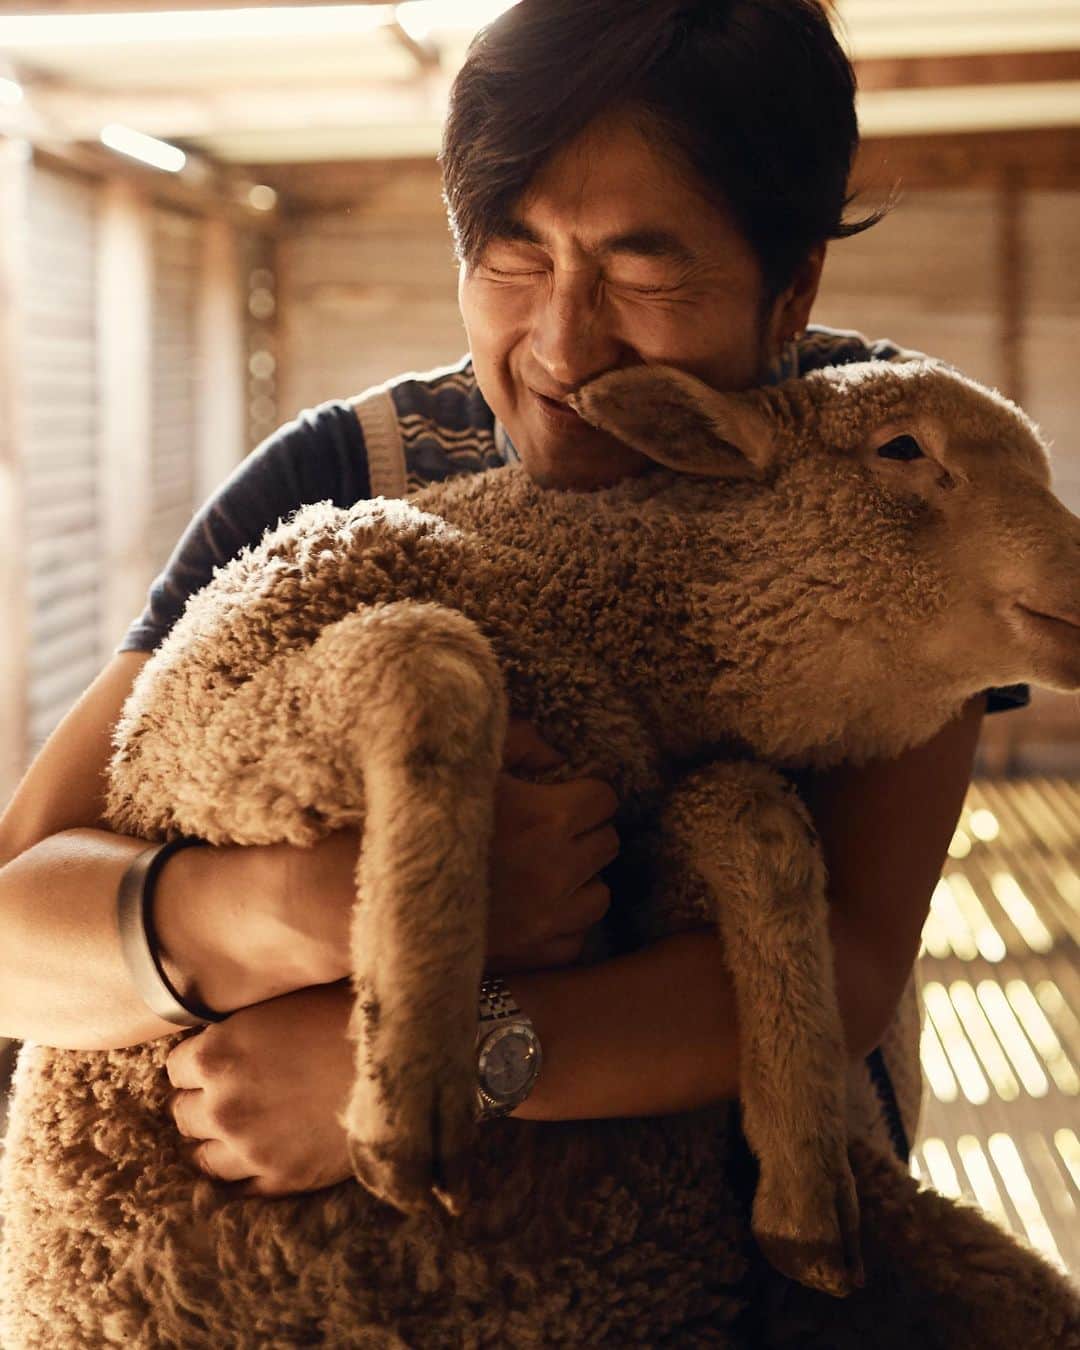 The Woolmark Company Japanのインスタグラム：「皆さんの洋服はこの人たちの手によって育まれています。彼らの熱意や献身、コミットメントによって、世界最高級のフリースが作りあげられています。 オーストラリアのほとんどの牧羊場は現在も家族経営が多く、多くの農村部は羊毛産業によって成り立っています。  エシカルで環境に配慮した農業は、衣類の品質と同じくらい重要です。オーストラリアの先進的で透明性の高いウール産業のおかげで、私たちはウールが生産された土地までさかのぼって追跡することができます。だからこそ、消費者の皆さまに #メリノ ウール ウェアの起源と品質を、自信を持ってお届けすることができるのです。」